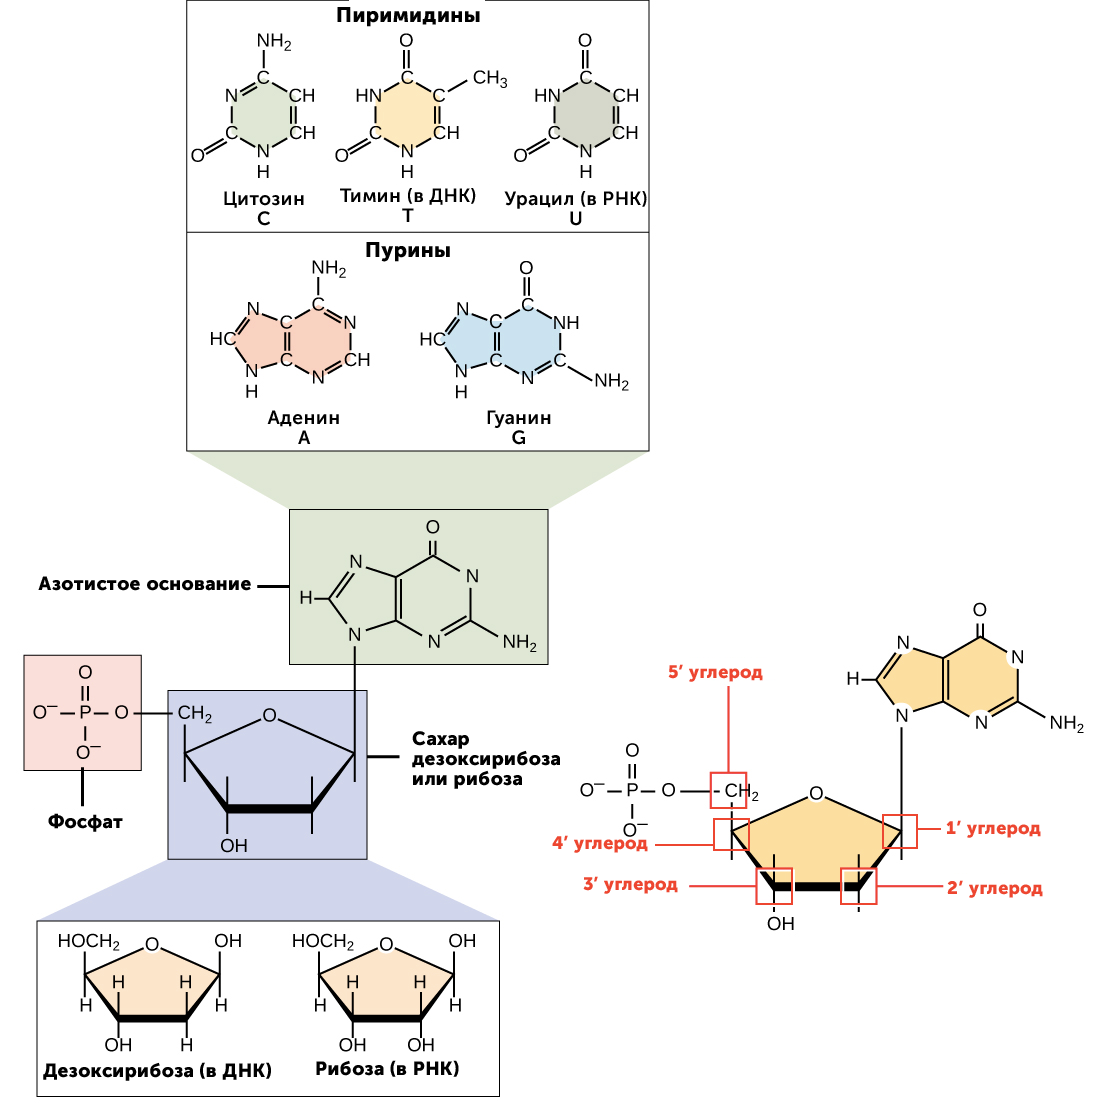 Рнк аденин тимин. Нуклеотиды с рибозой. Аденин рибоза. Аденин гуанин цитозин Тимин урацил комплементарность. Нуклеотиды ДНК И РНК.